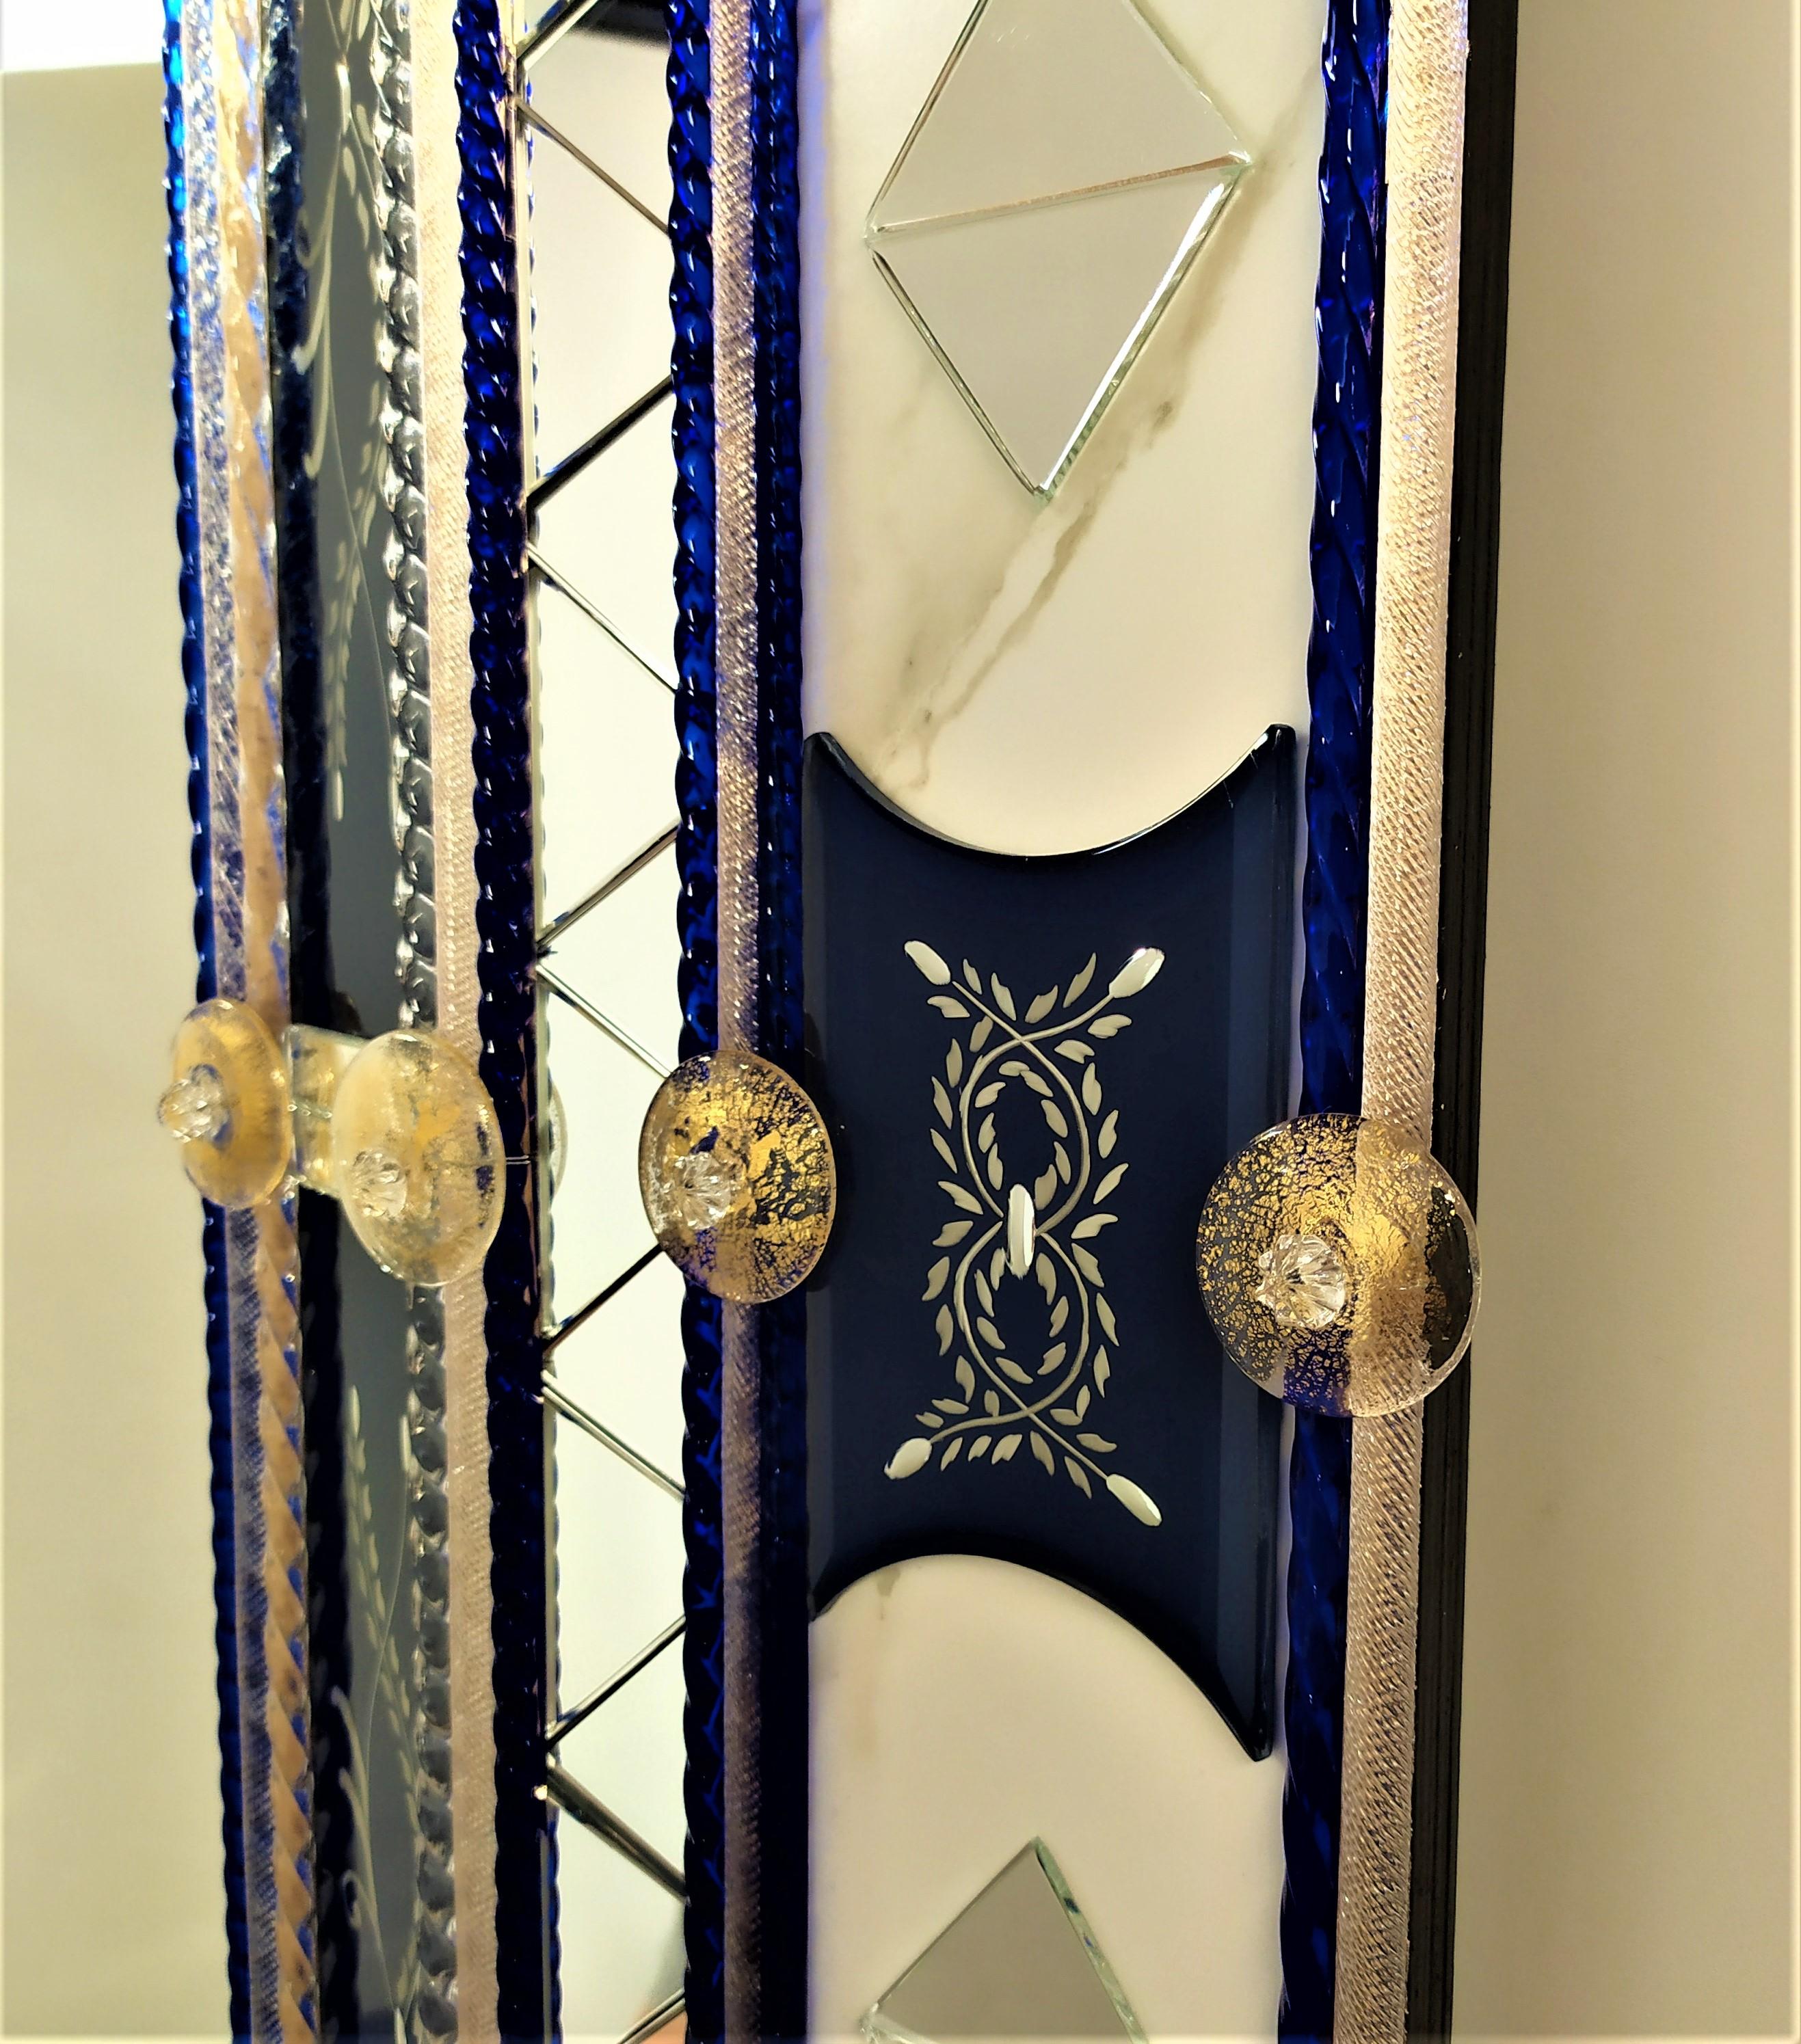 Spiegel in Murano-Glas, mit Bändern und abgeschrägten Stücke eingraviert, versilbert mit reinem Silber in blauer Farbe, mit Einfügung von Details in klarem Spiegel in der Form eines Dreiecks, Murano-Glas-Stäbe in Kristall und blaue Farbe Madonna auf